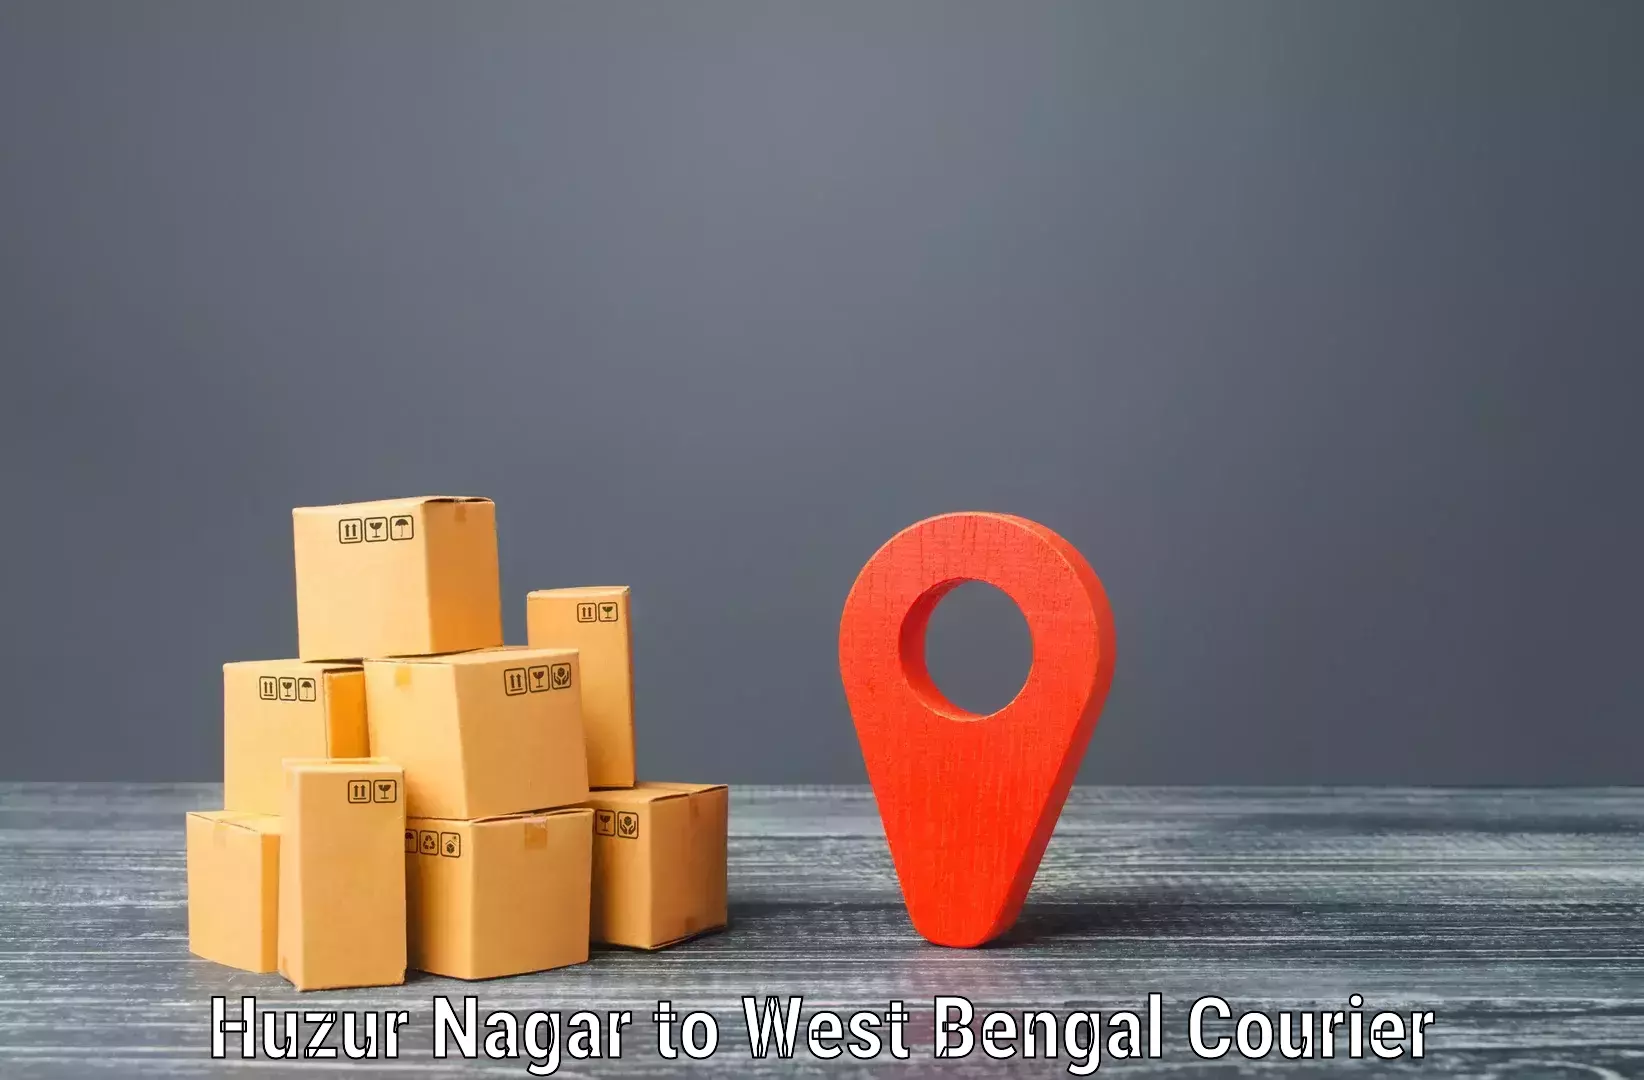 Easy access courier services Huzur Nagar to Algarah